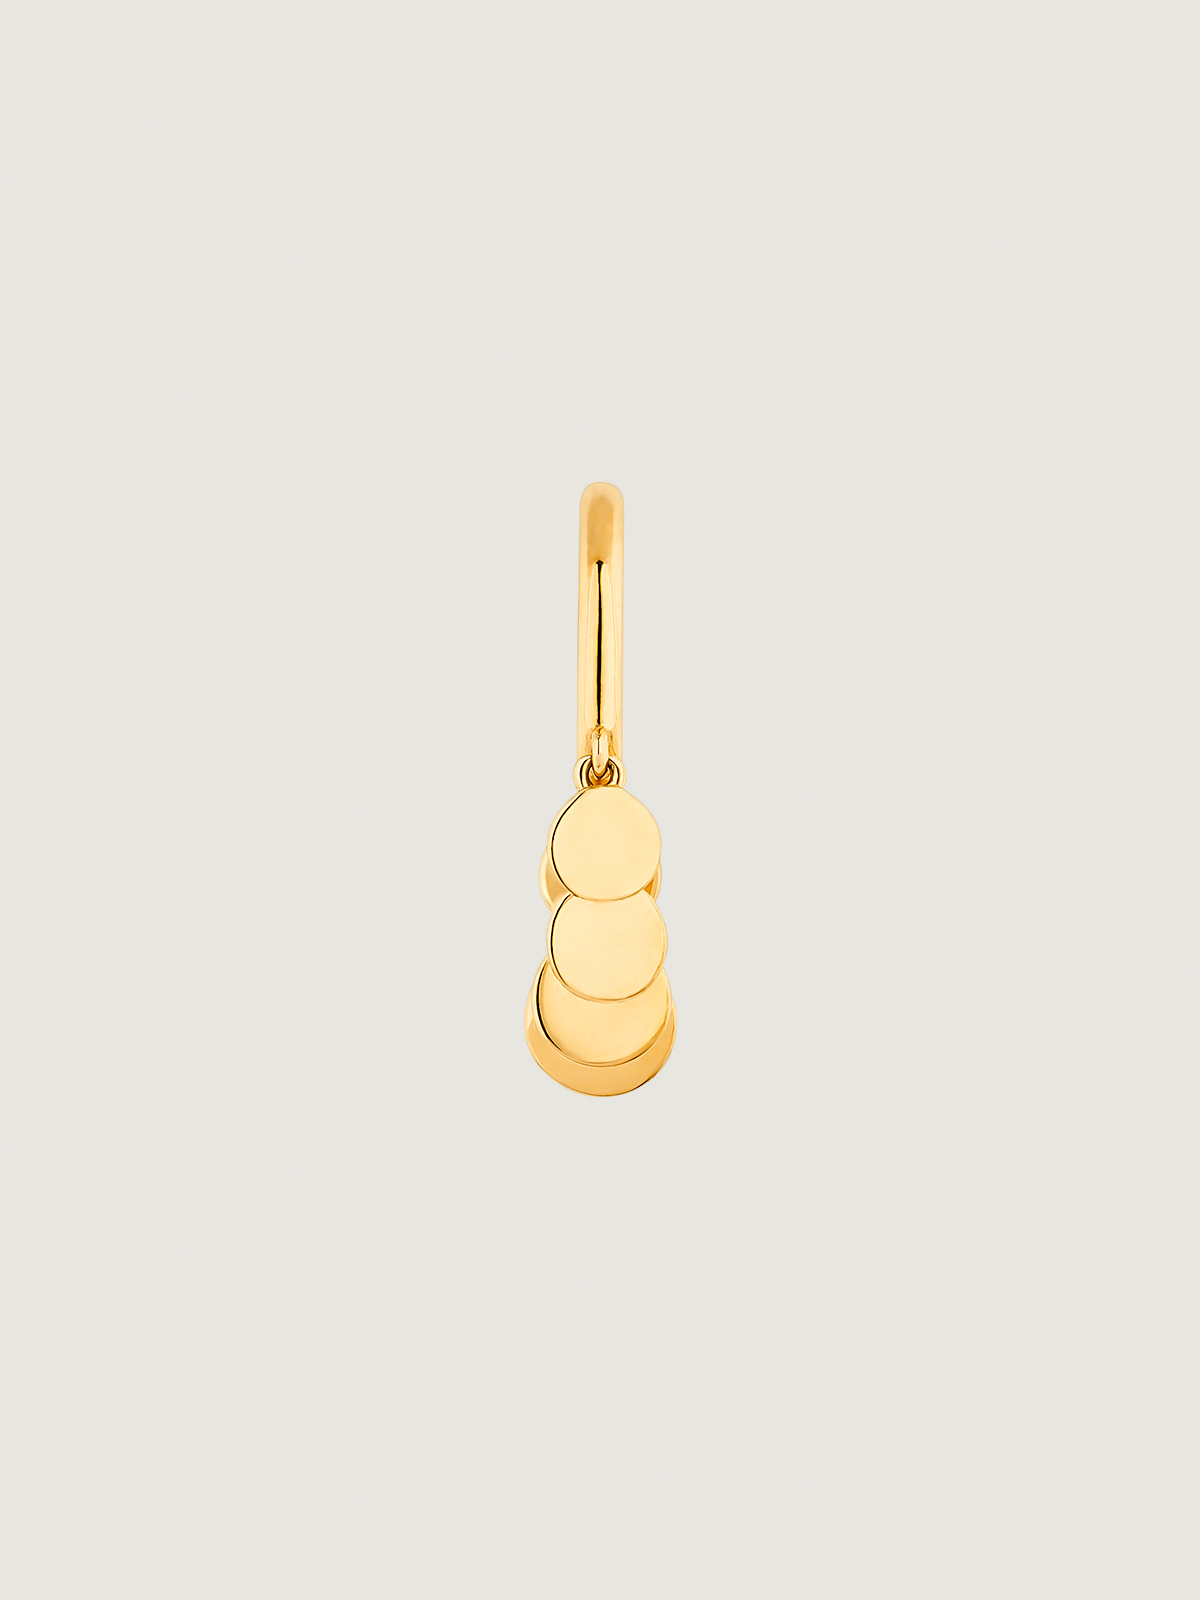 Boucle d'oreille individuelle en or jaune 9K avec des sphères suspendues